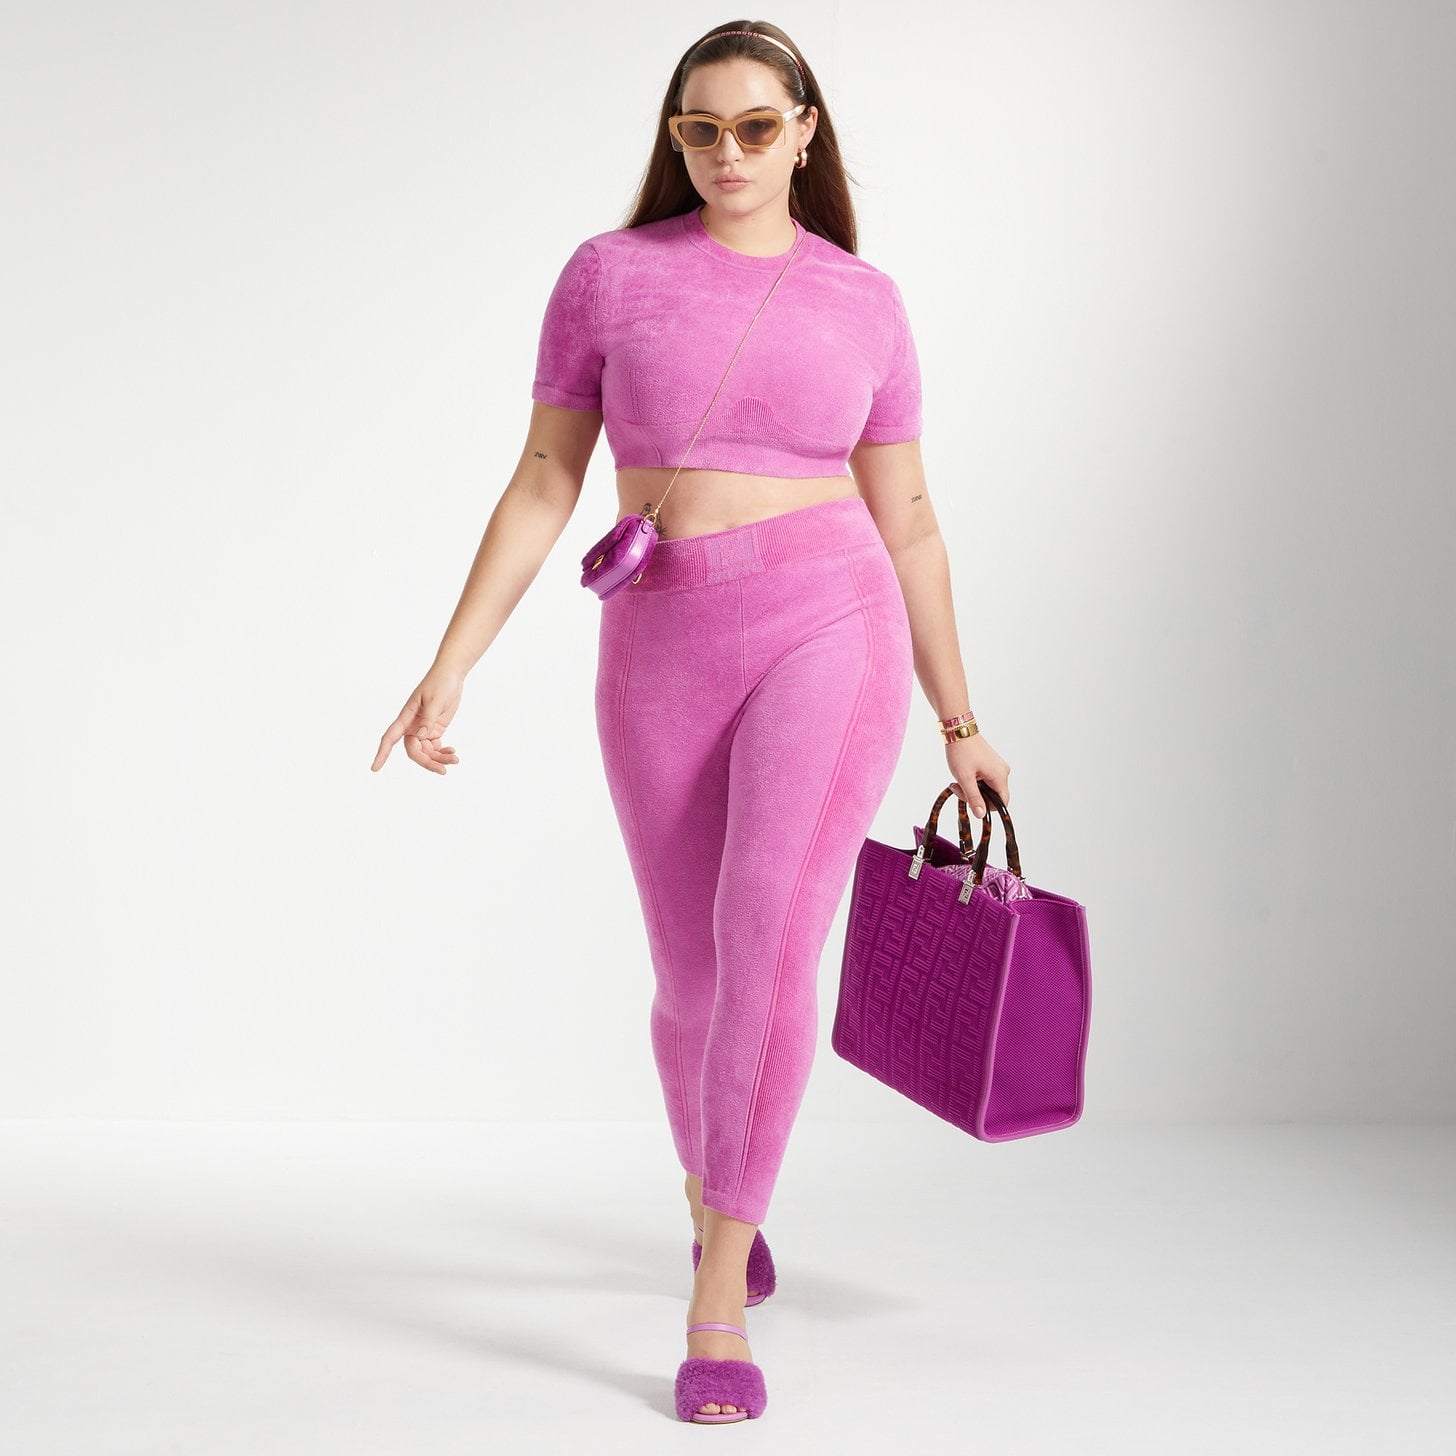 Fendi Skims 2 piece set  Clothes design, Plus fashion, Fashion tips